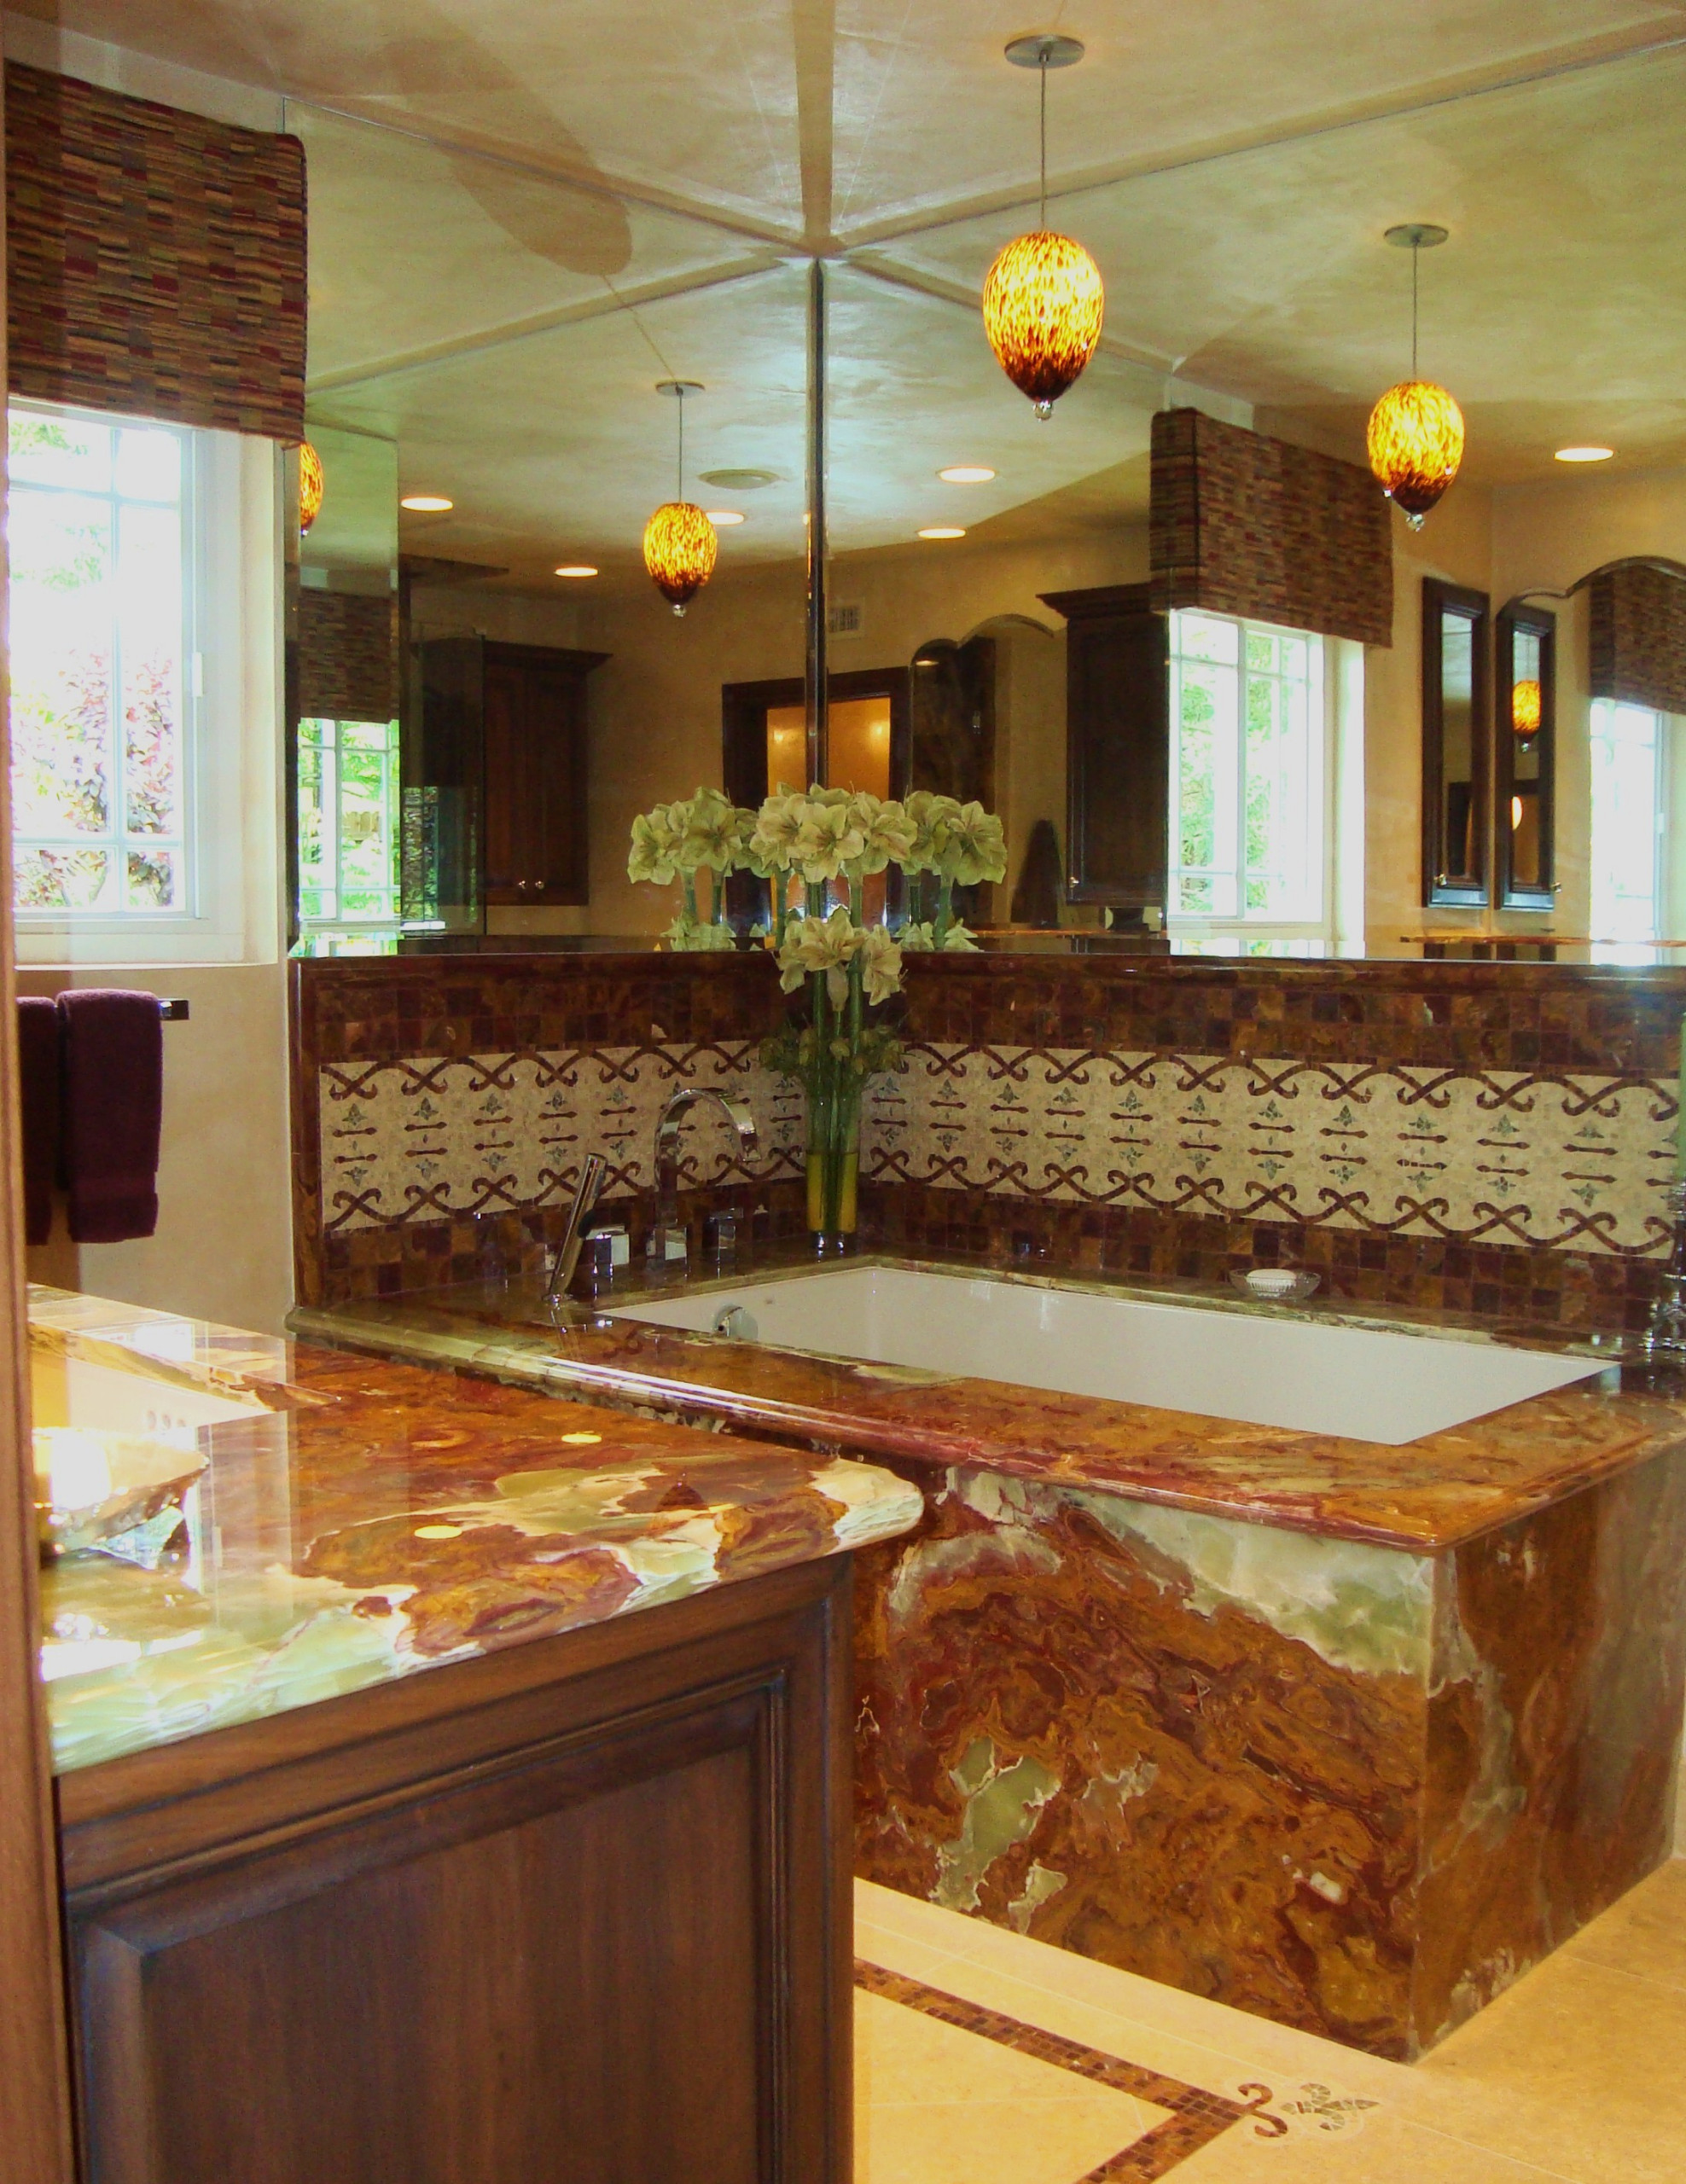 The Rubin - Onyx "master bath" tub, and elaborate tile work!